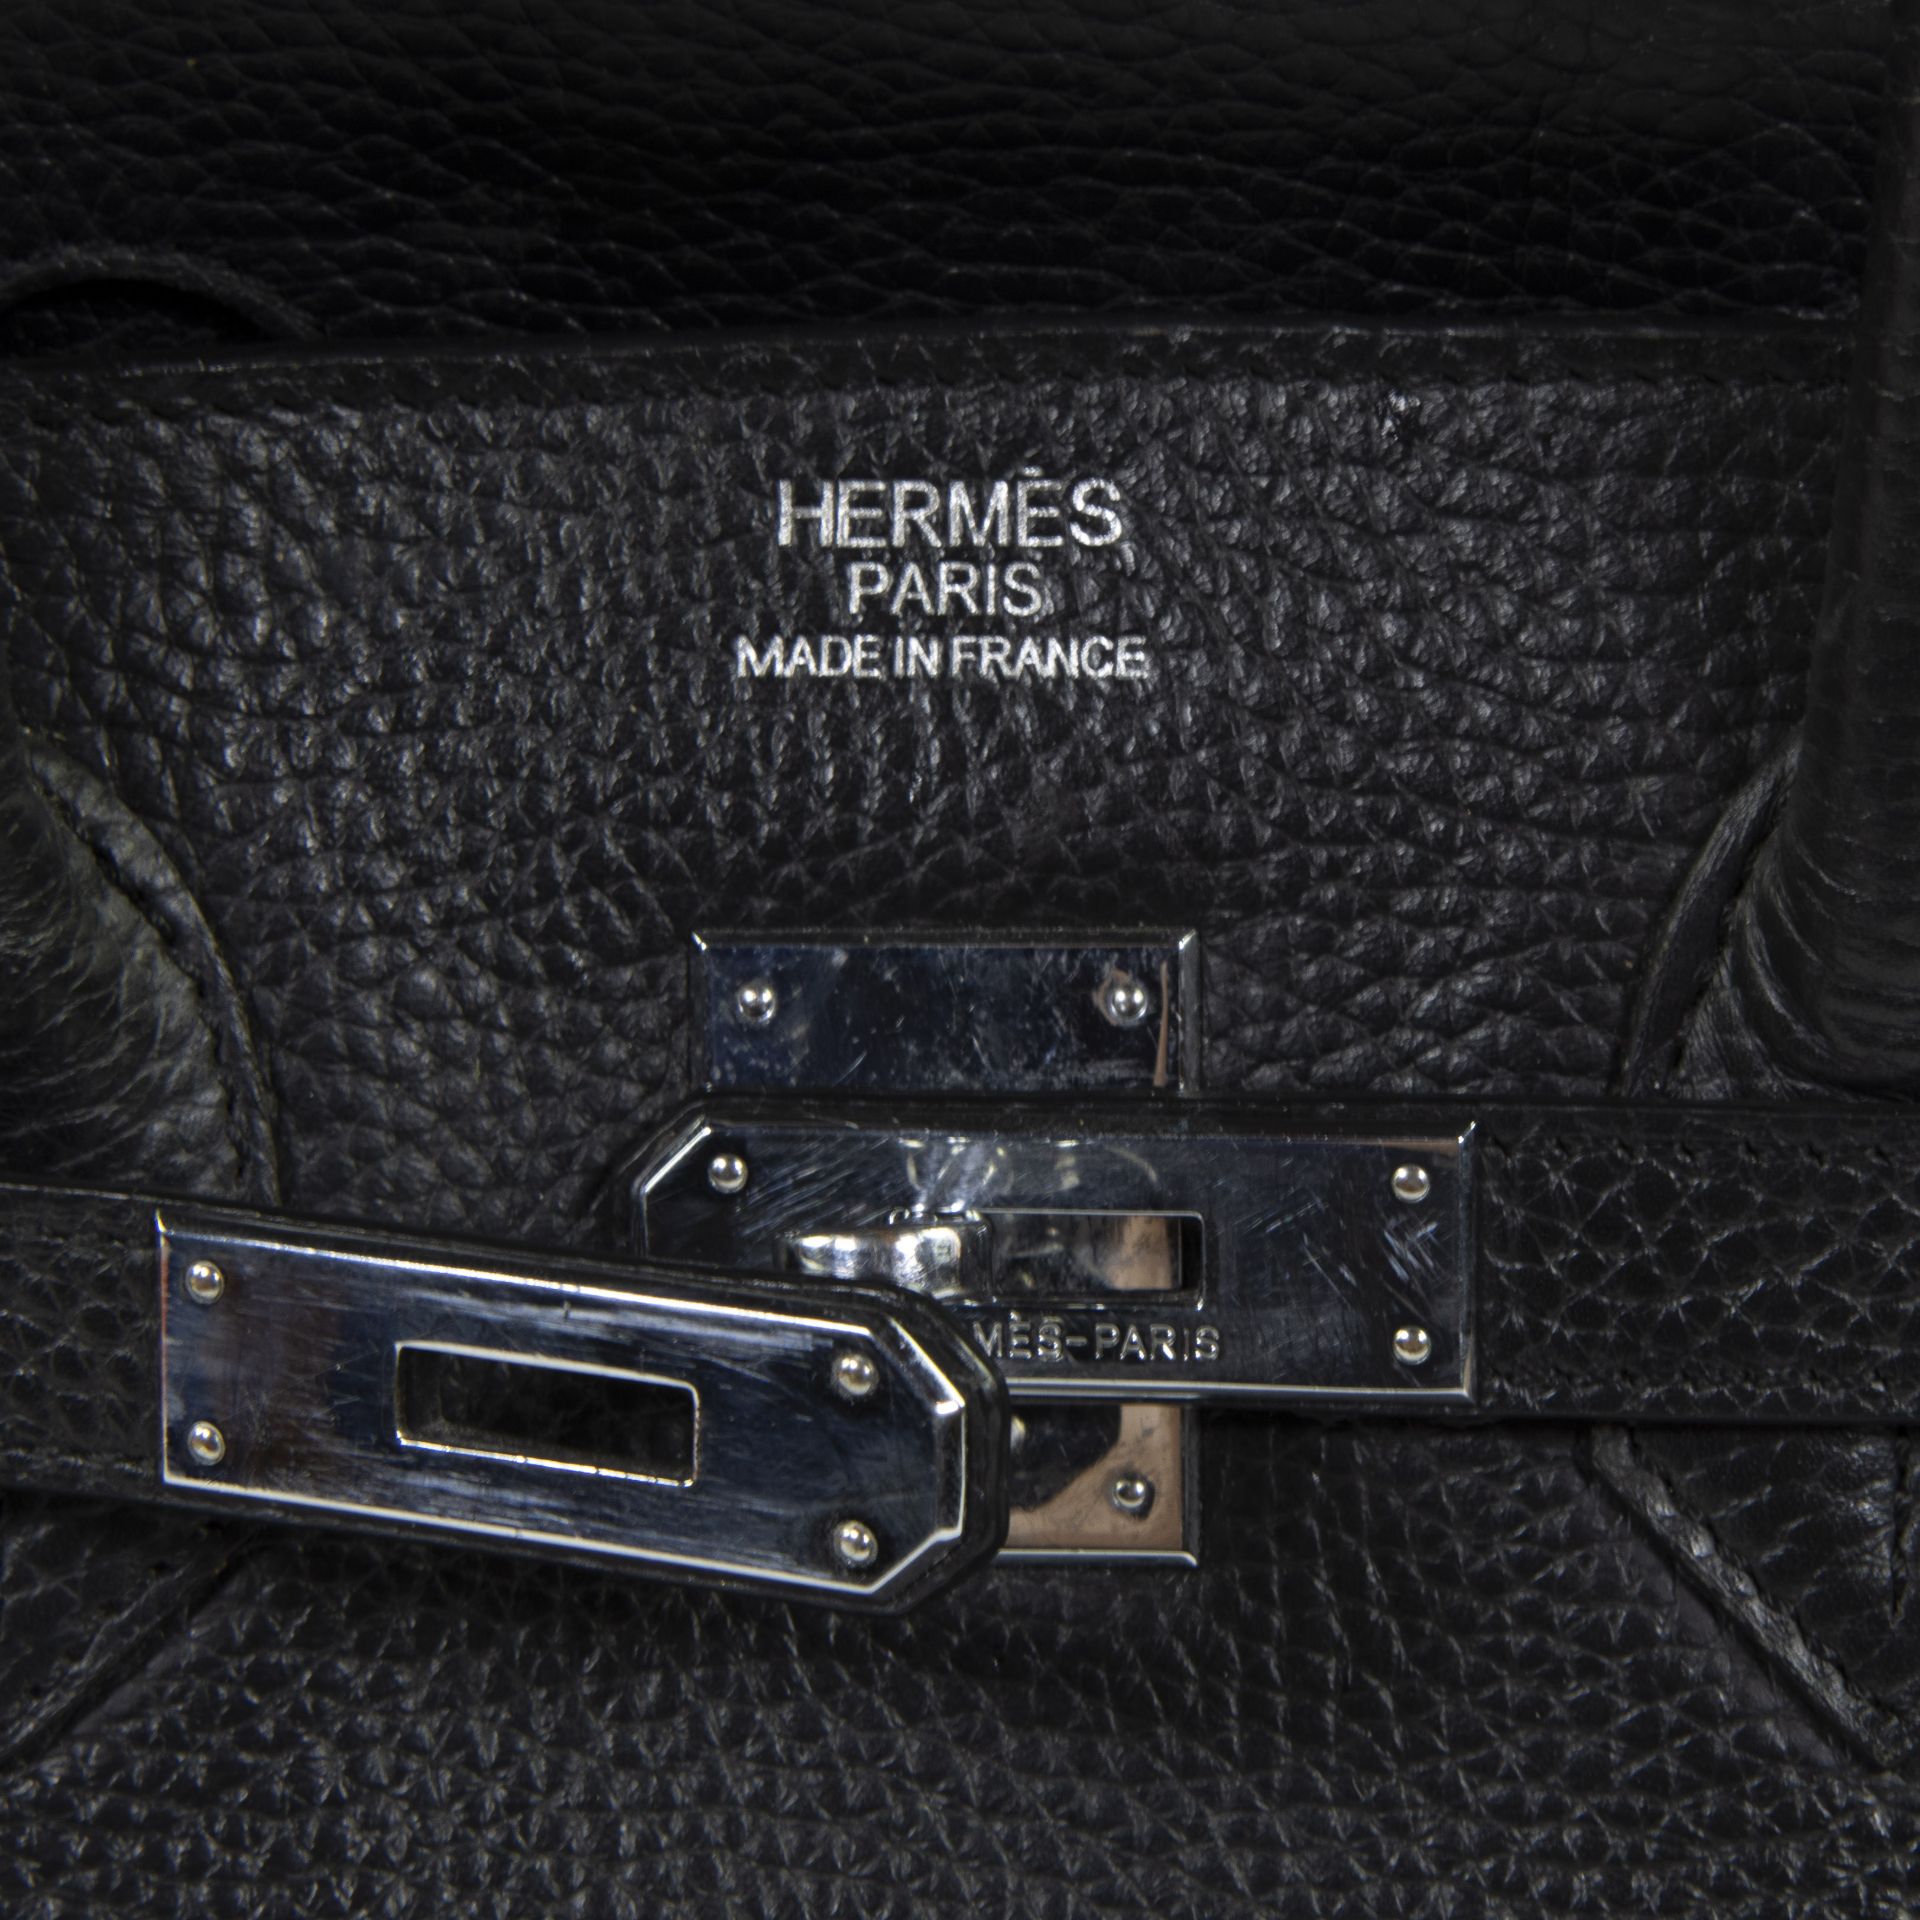 Birkin bag by Hermès Paris - Image 3 of 6